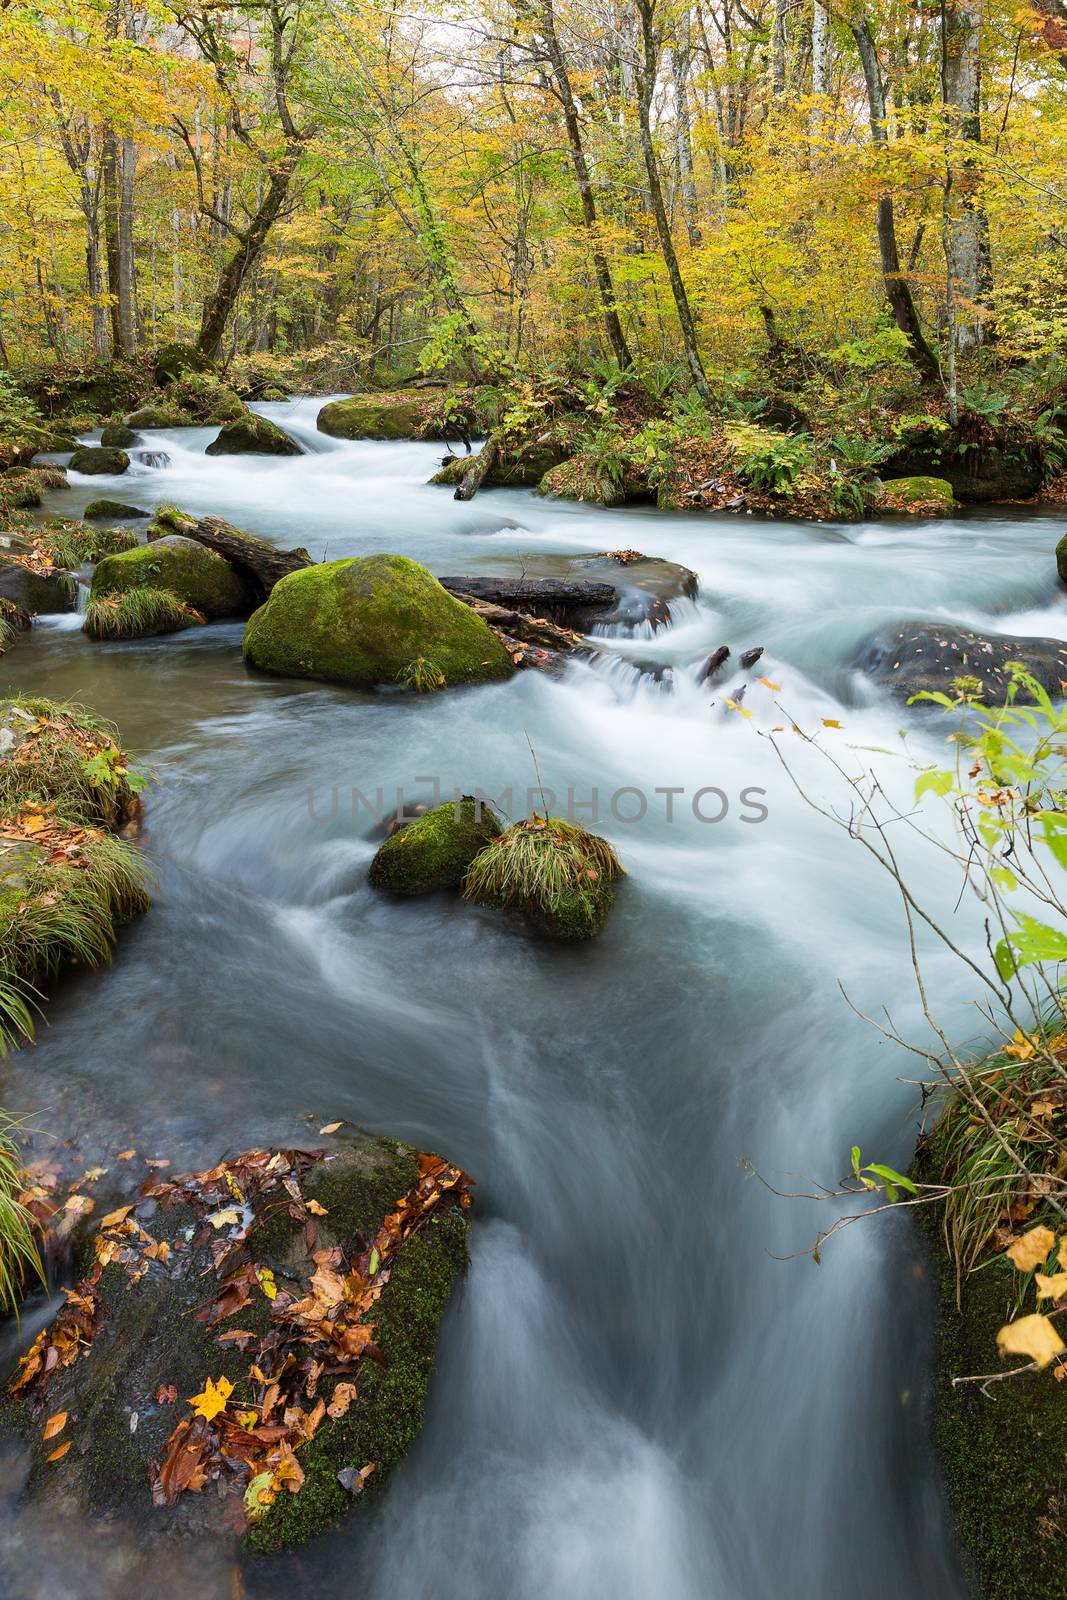 Oirase Stream in autumn of Japan